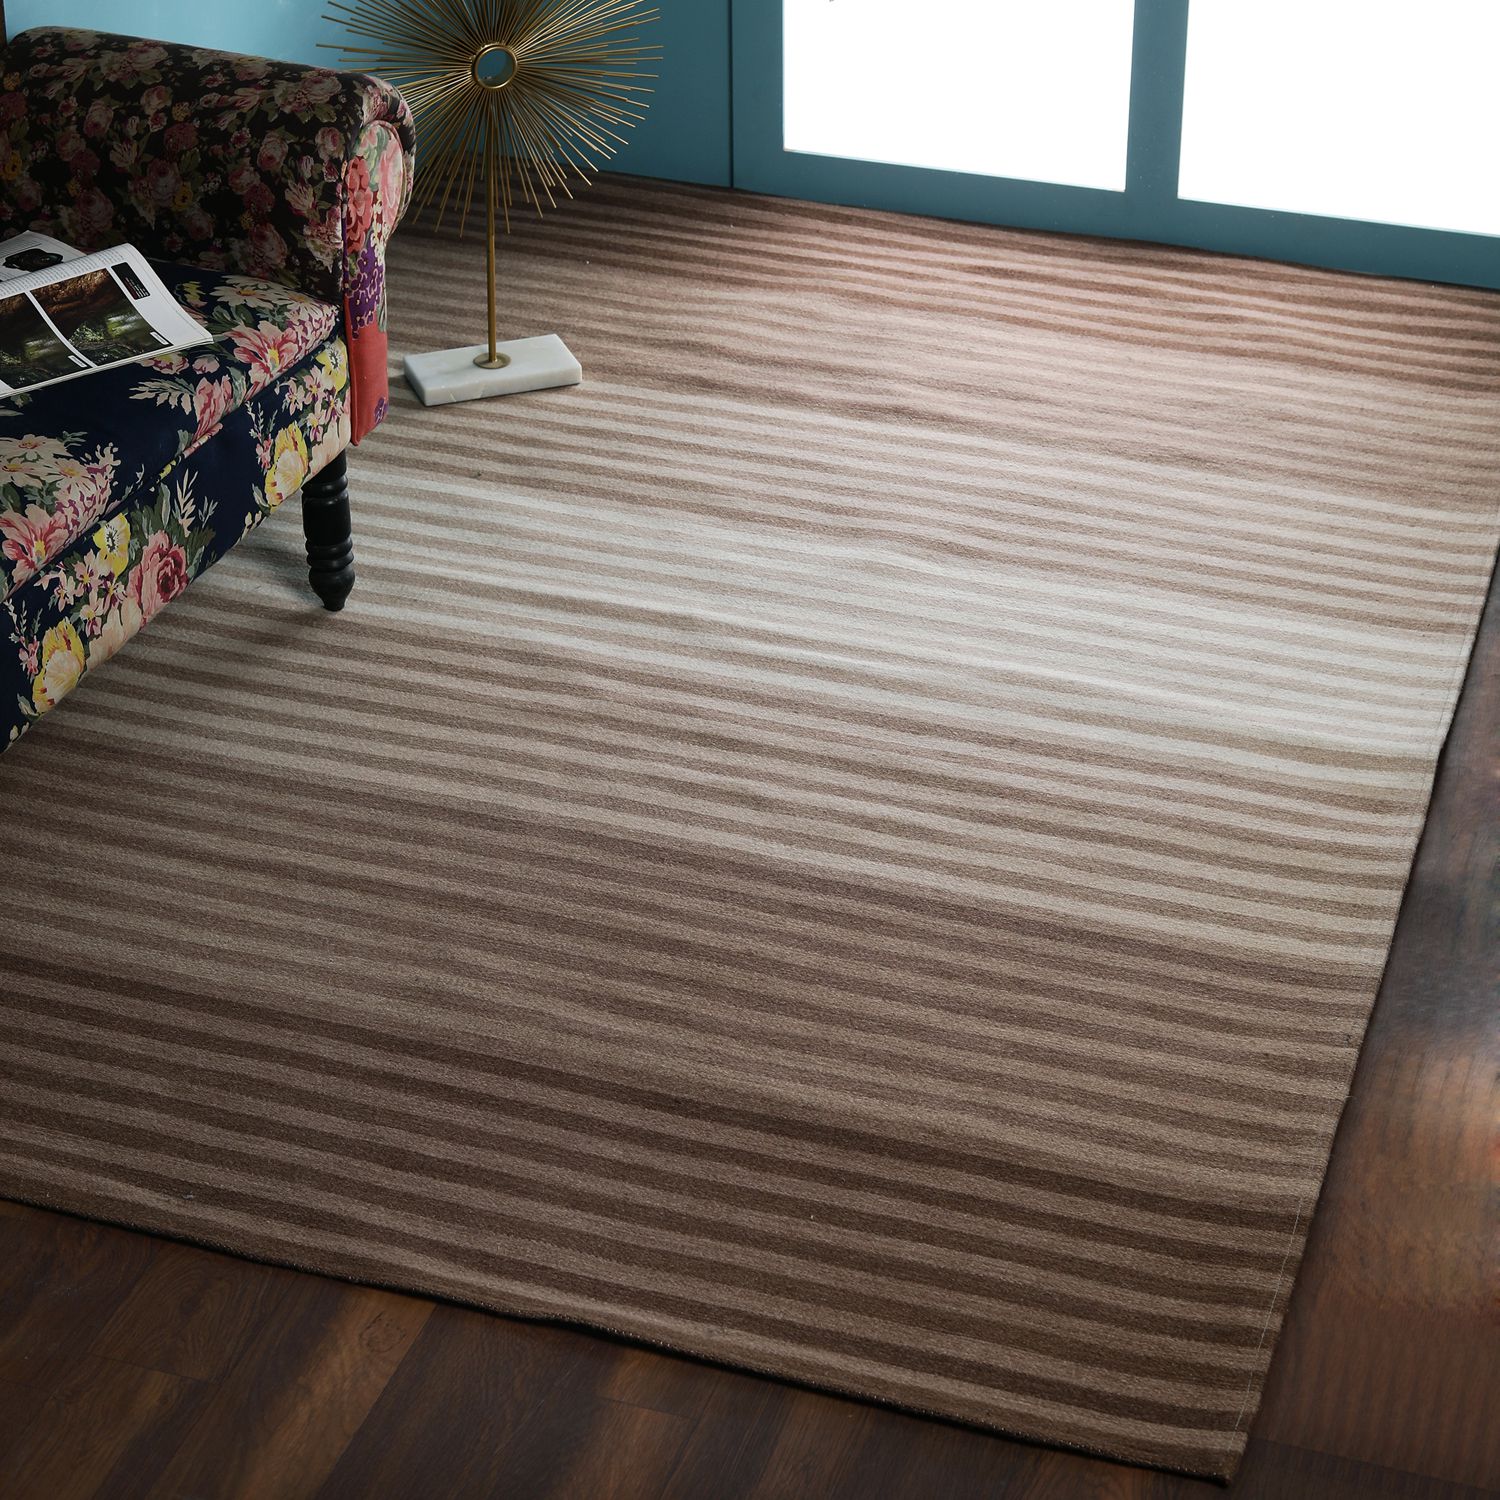     			PEQURA Brown Wool Carpet Stripes 5x8 Ft